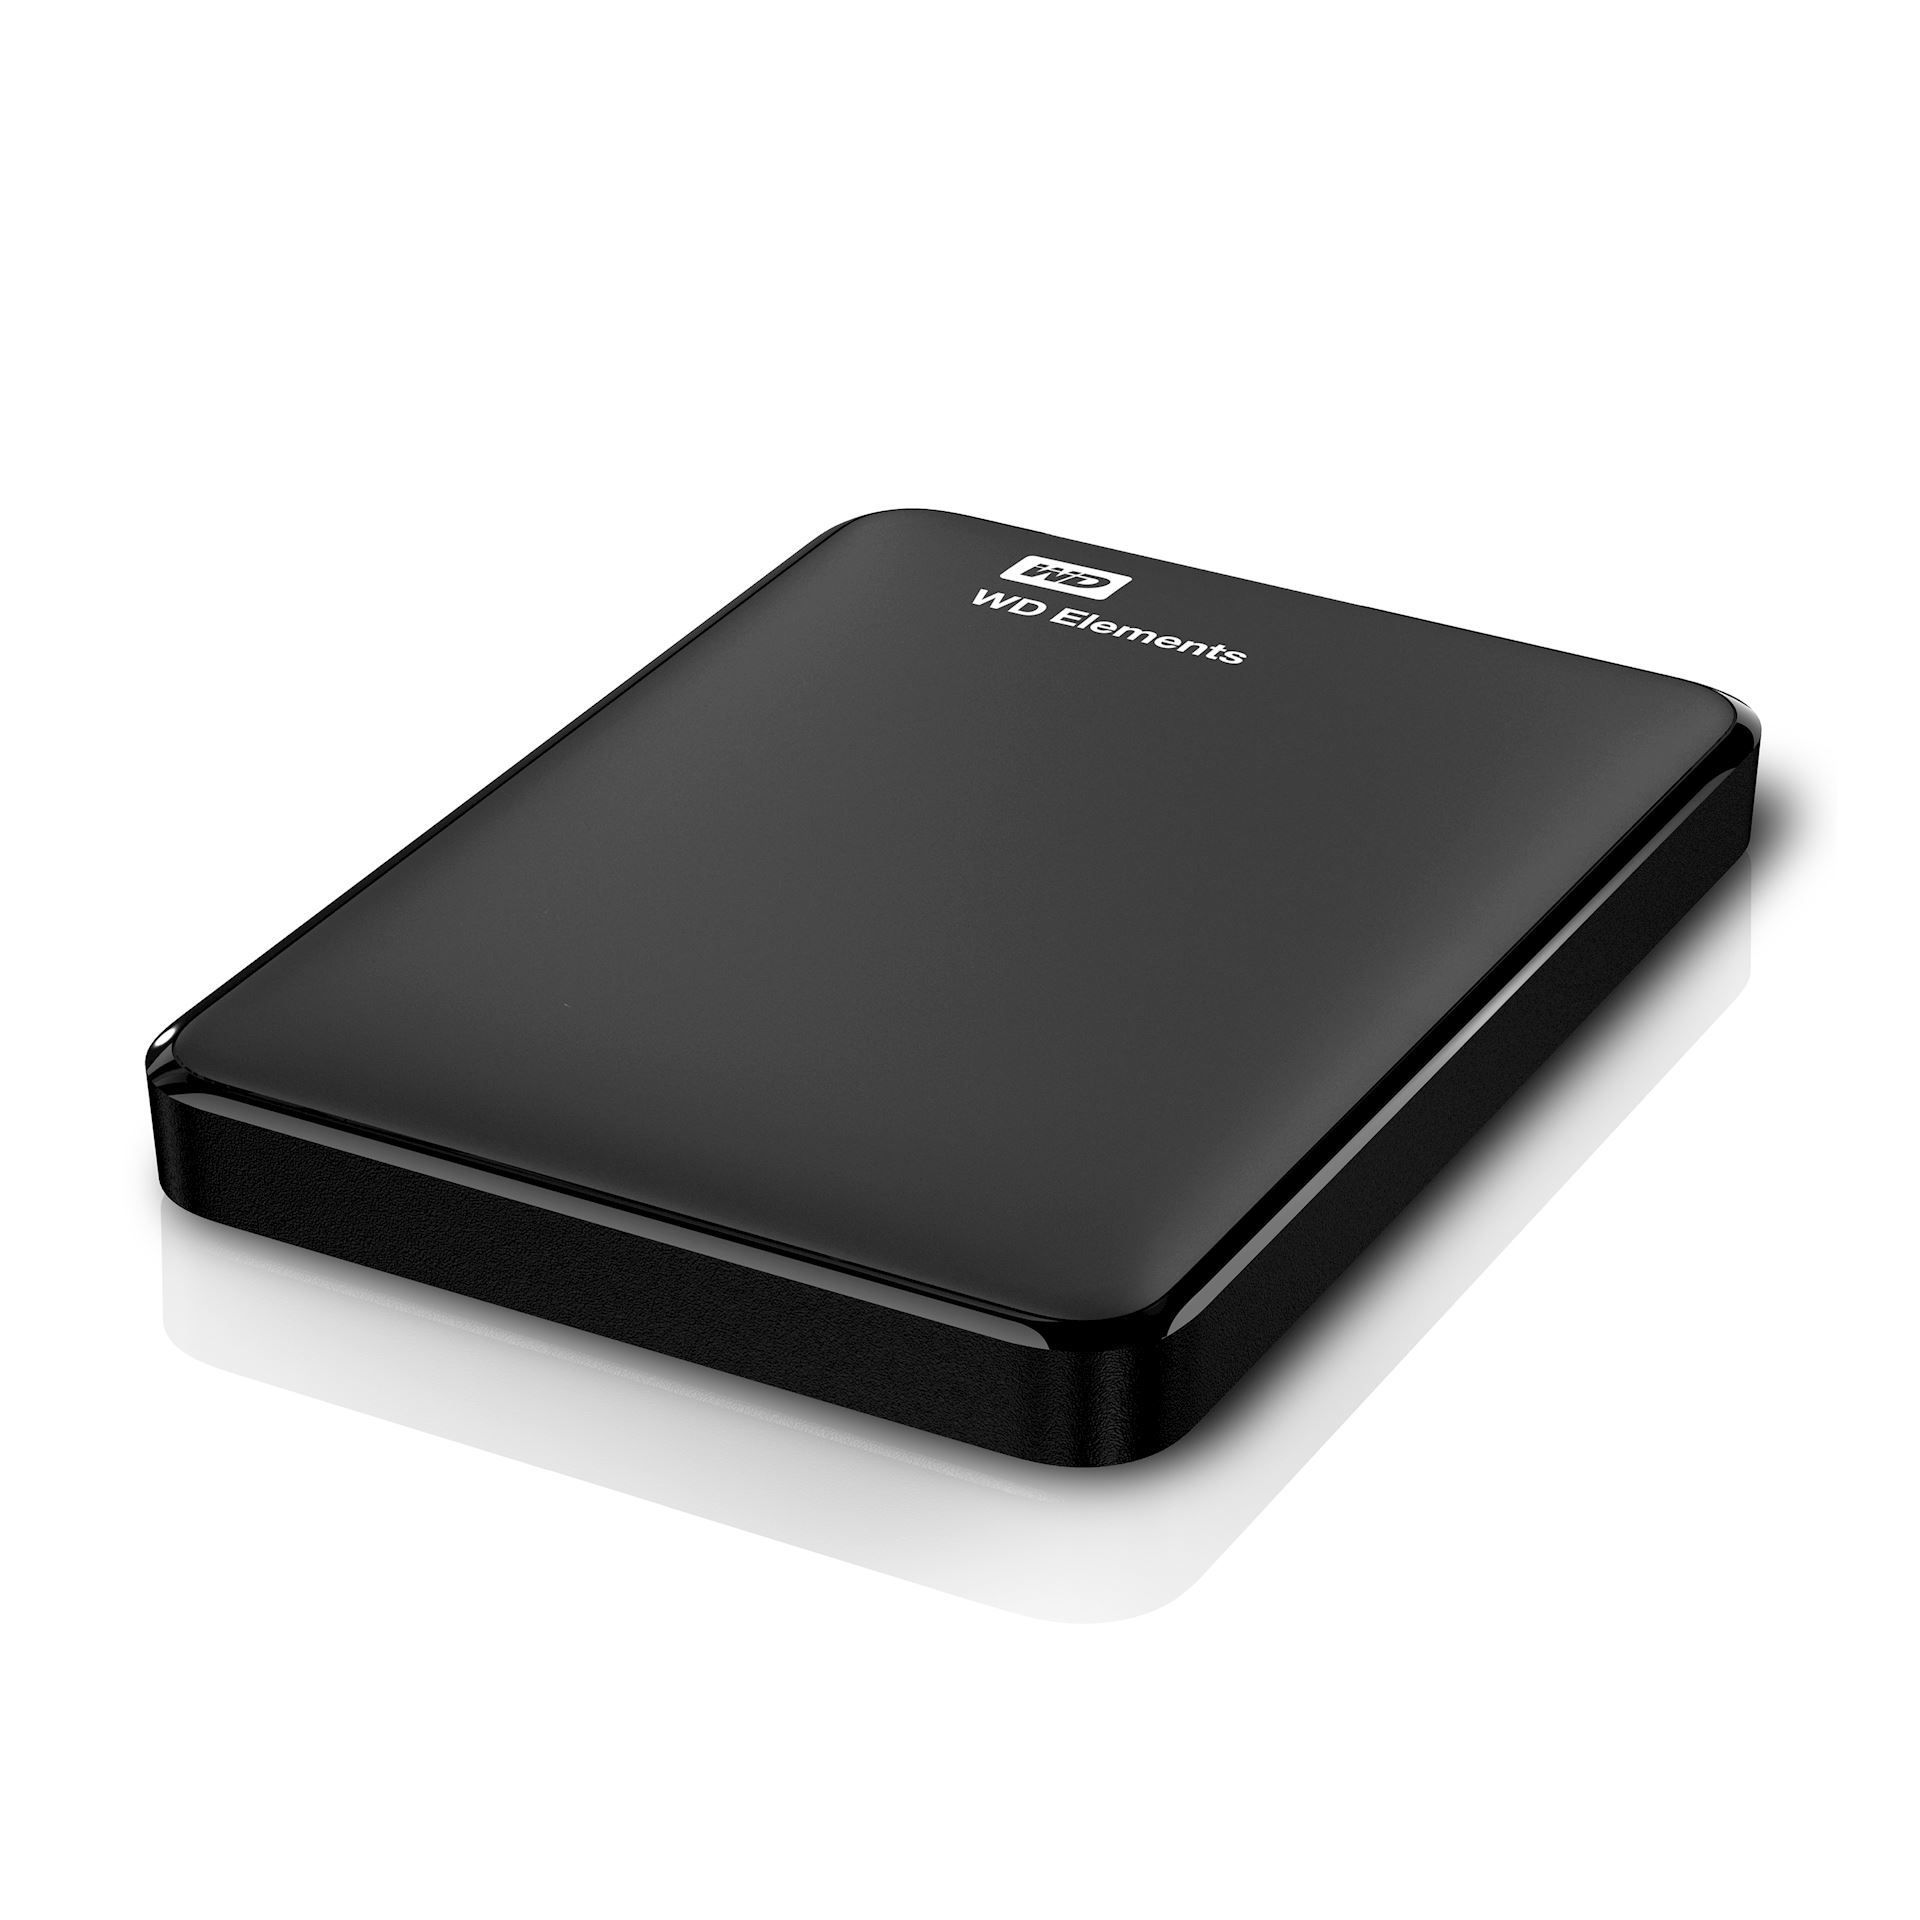 Matig Bakkerij server Western Digital Elements 4TB External Hard Disk Black | TeqFind